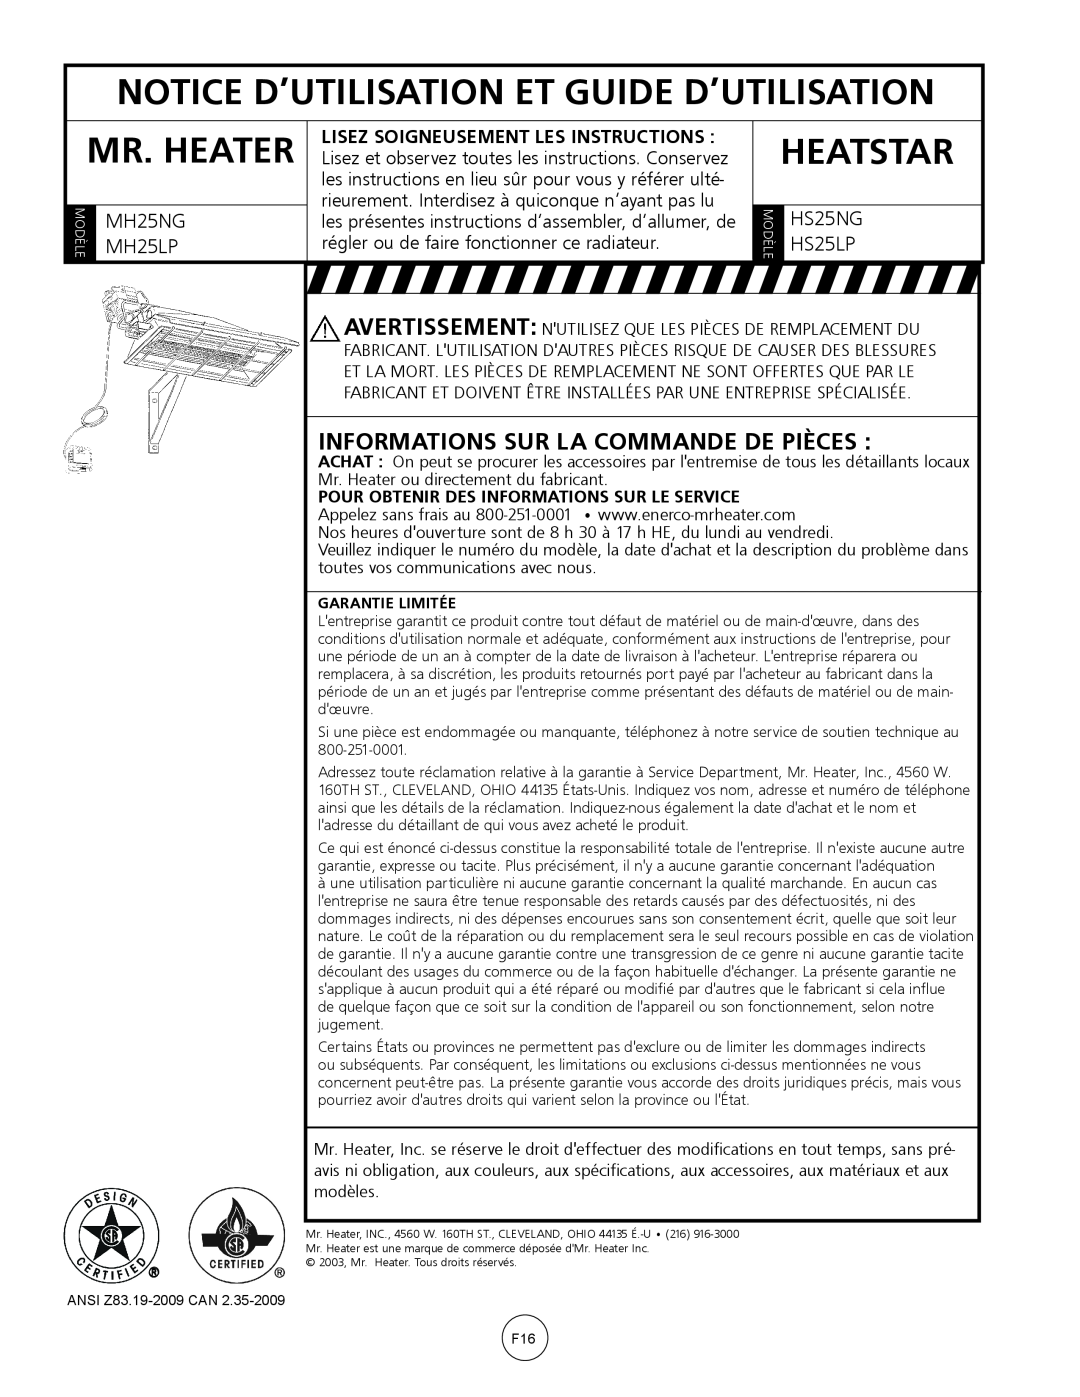 Mr. Heater MH25NG/LP Notice D’Utilisation Et Guide D’Utilisation, Informations Sur La Commande De Pièces, Mr. Heater 